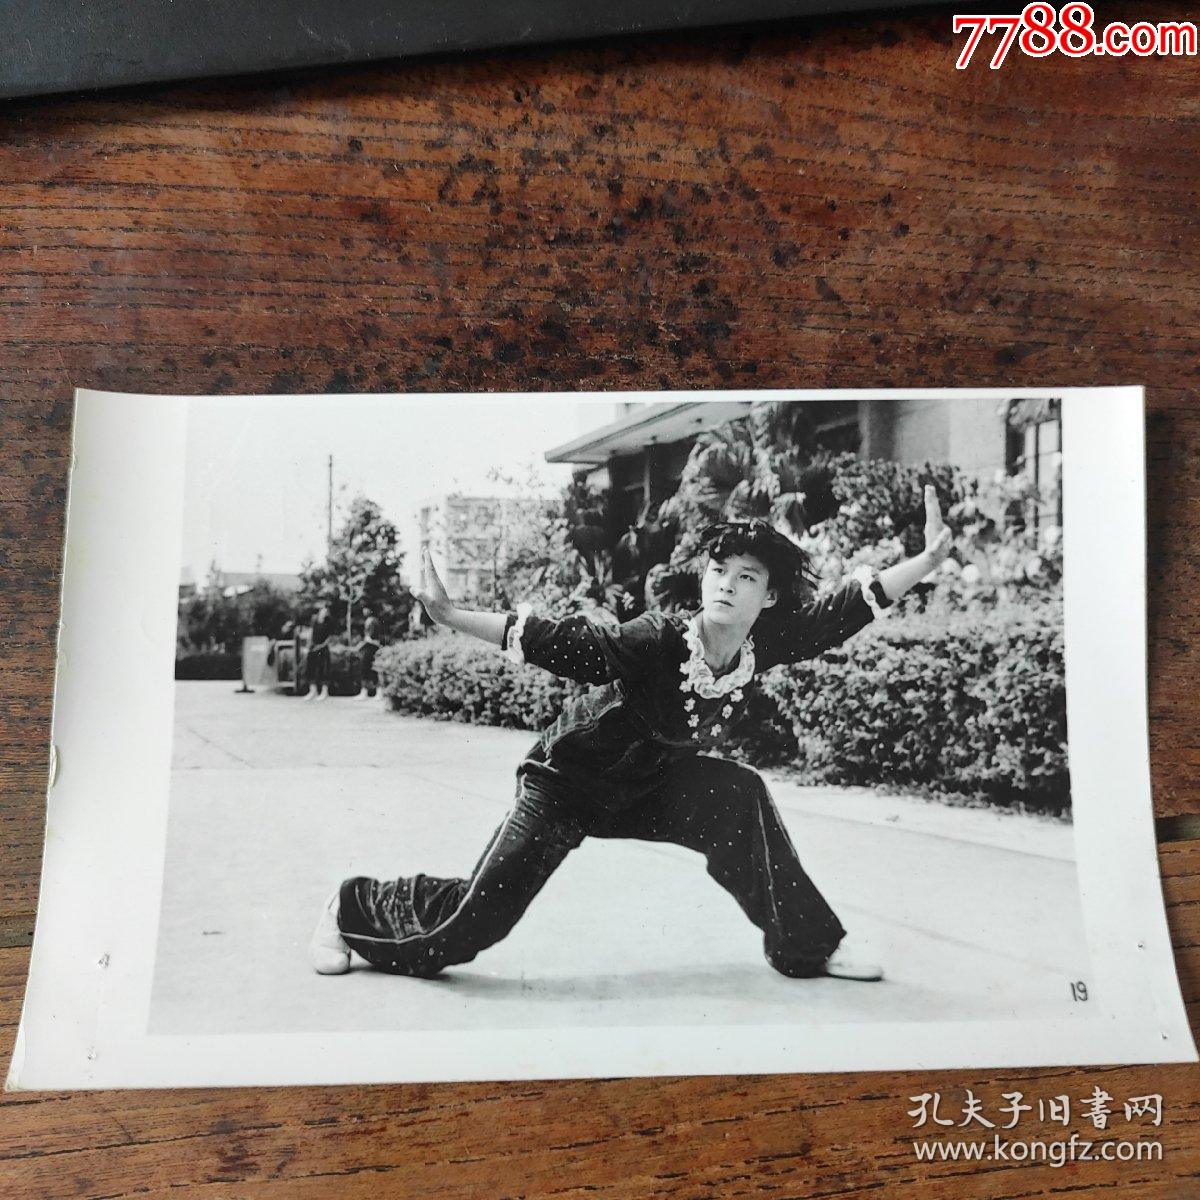 1981年,全国武术表演赛在福州举行,北京郝致华表演刀术